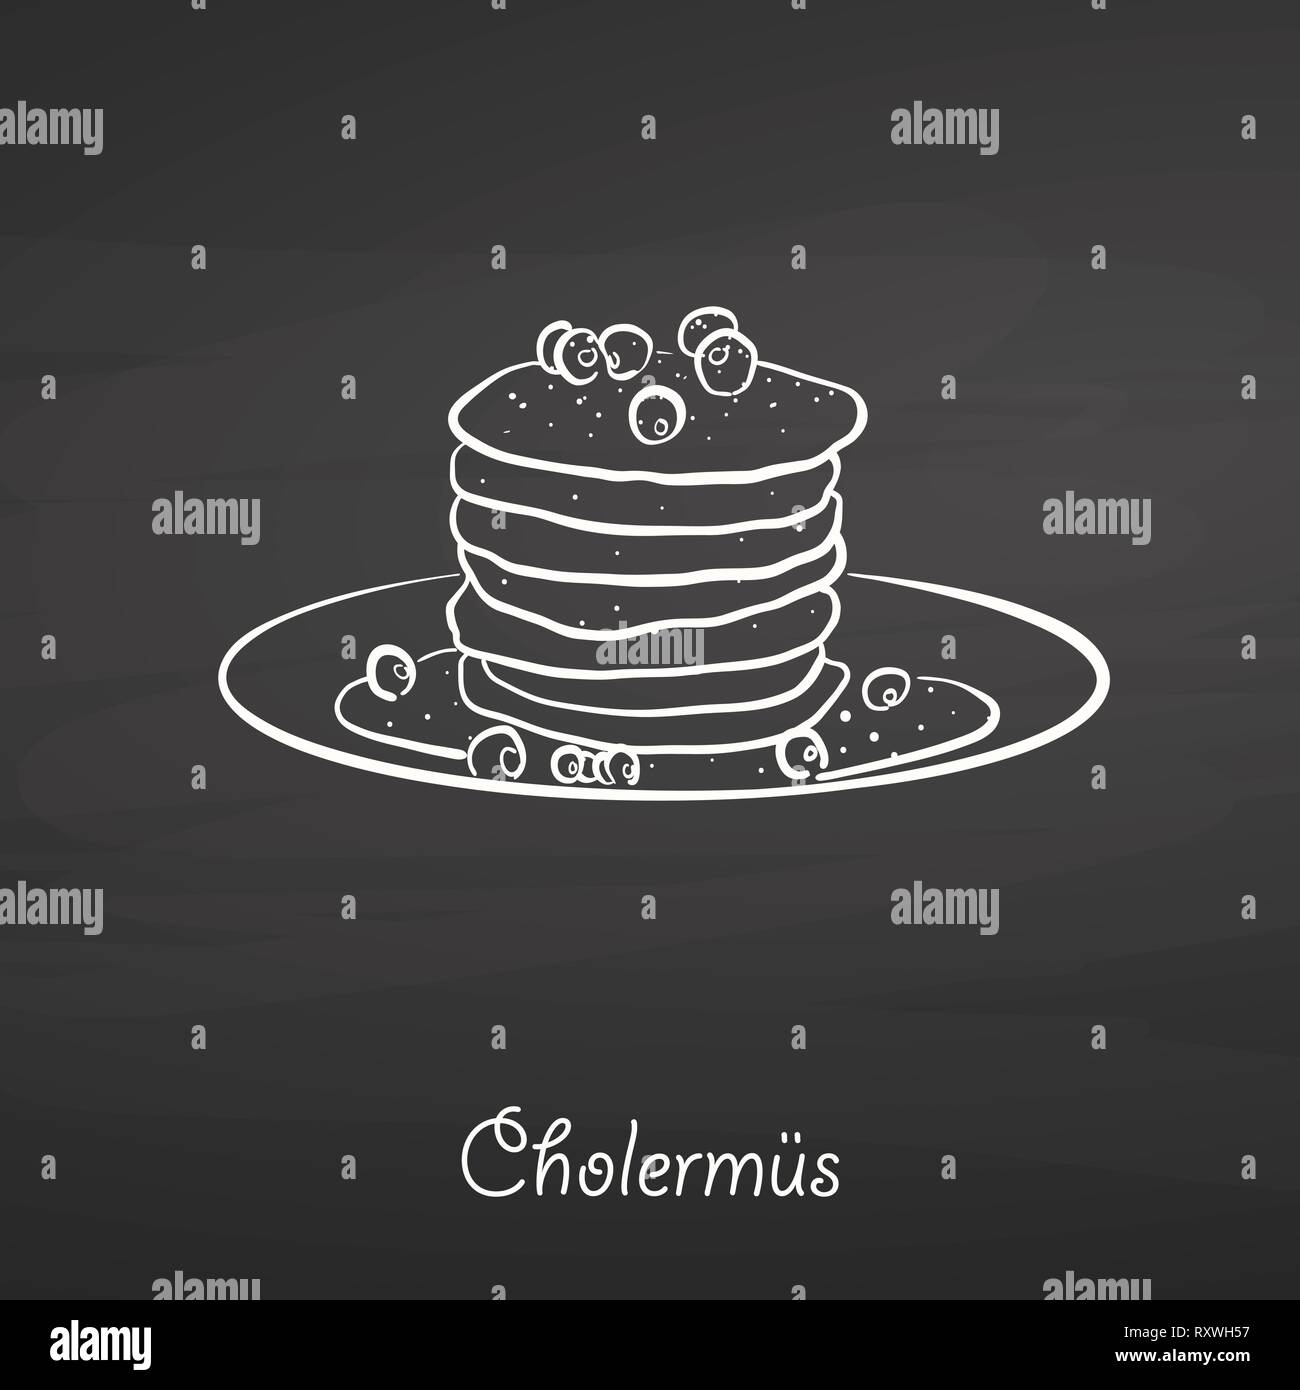 Cholermüs sketch alimentaire sur tableau. Dessin vectoriel de Pancake, généralement connu en Suisse. Illustration alimentaire série. Illustration de Vecteur